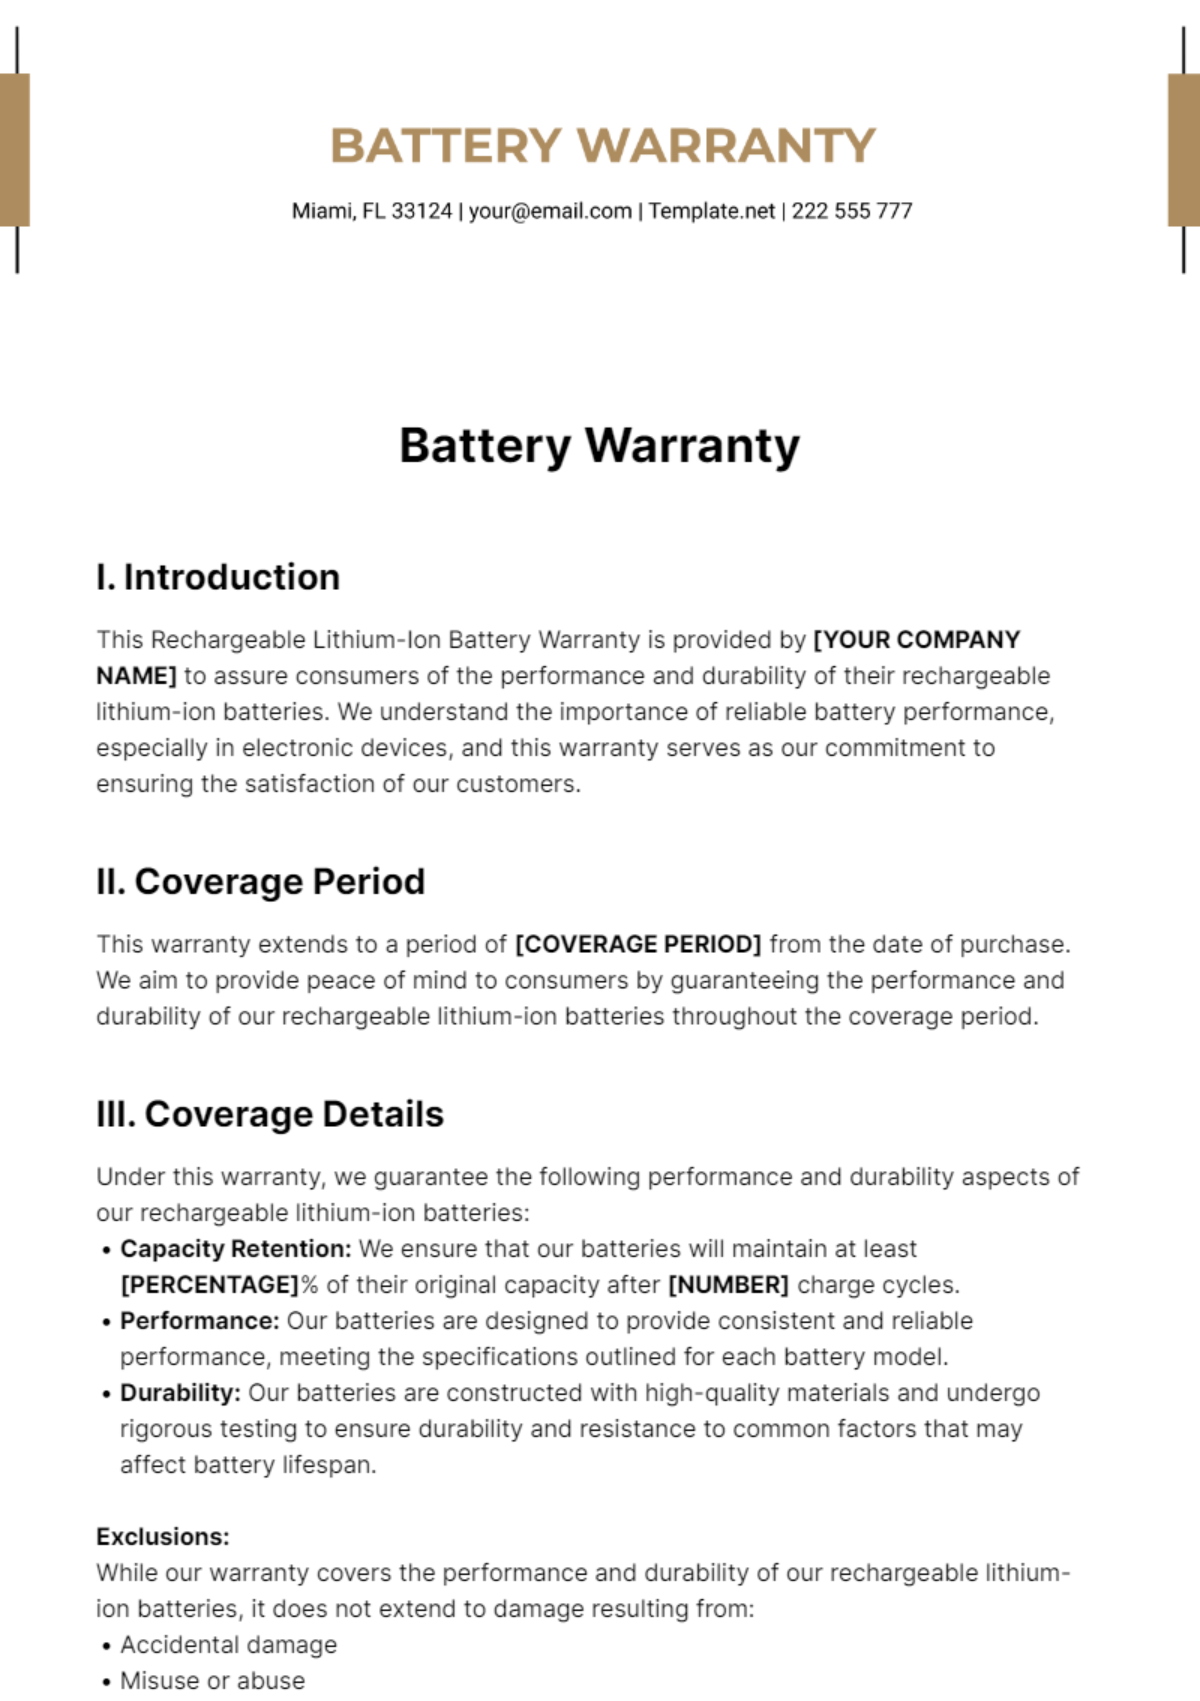 Battery Warranty Template